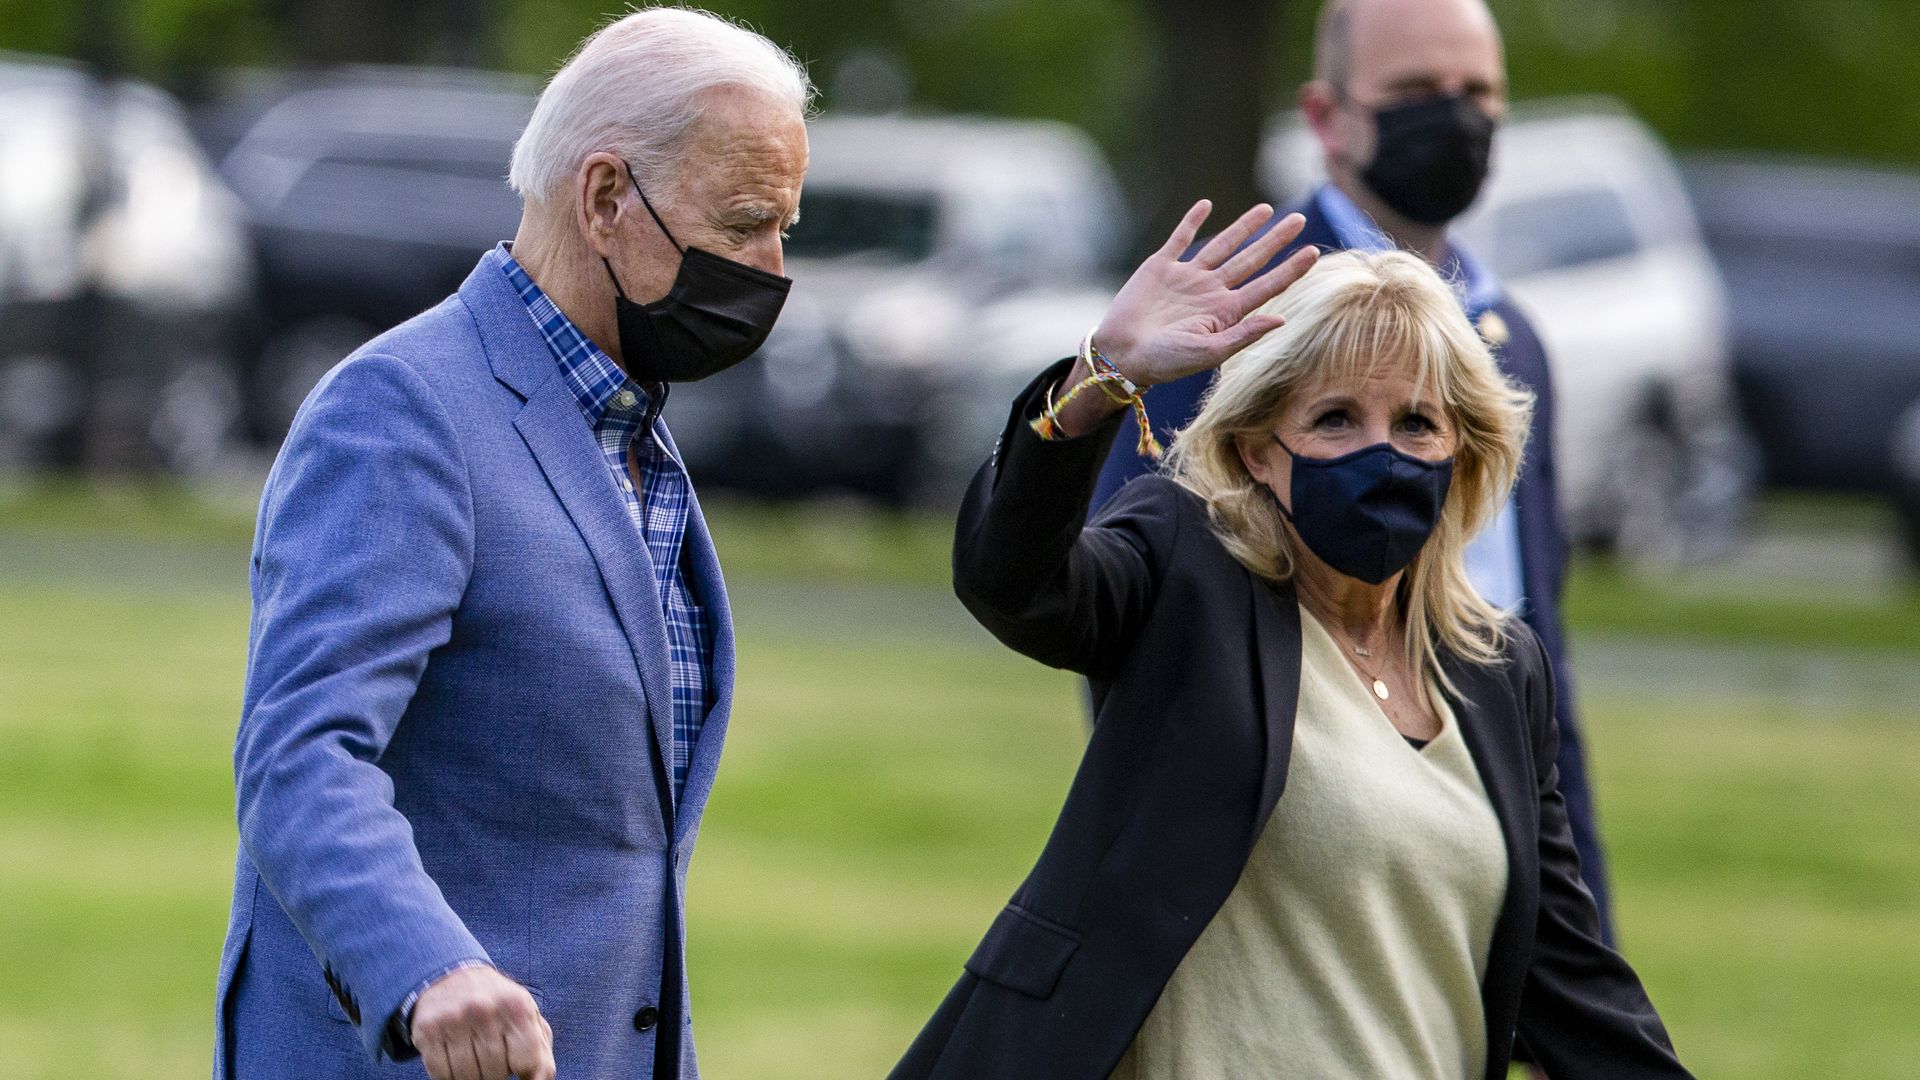 Joe Biden and Jill Biden walk outside while Jill waves